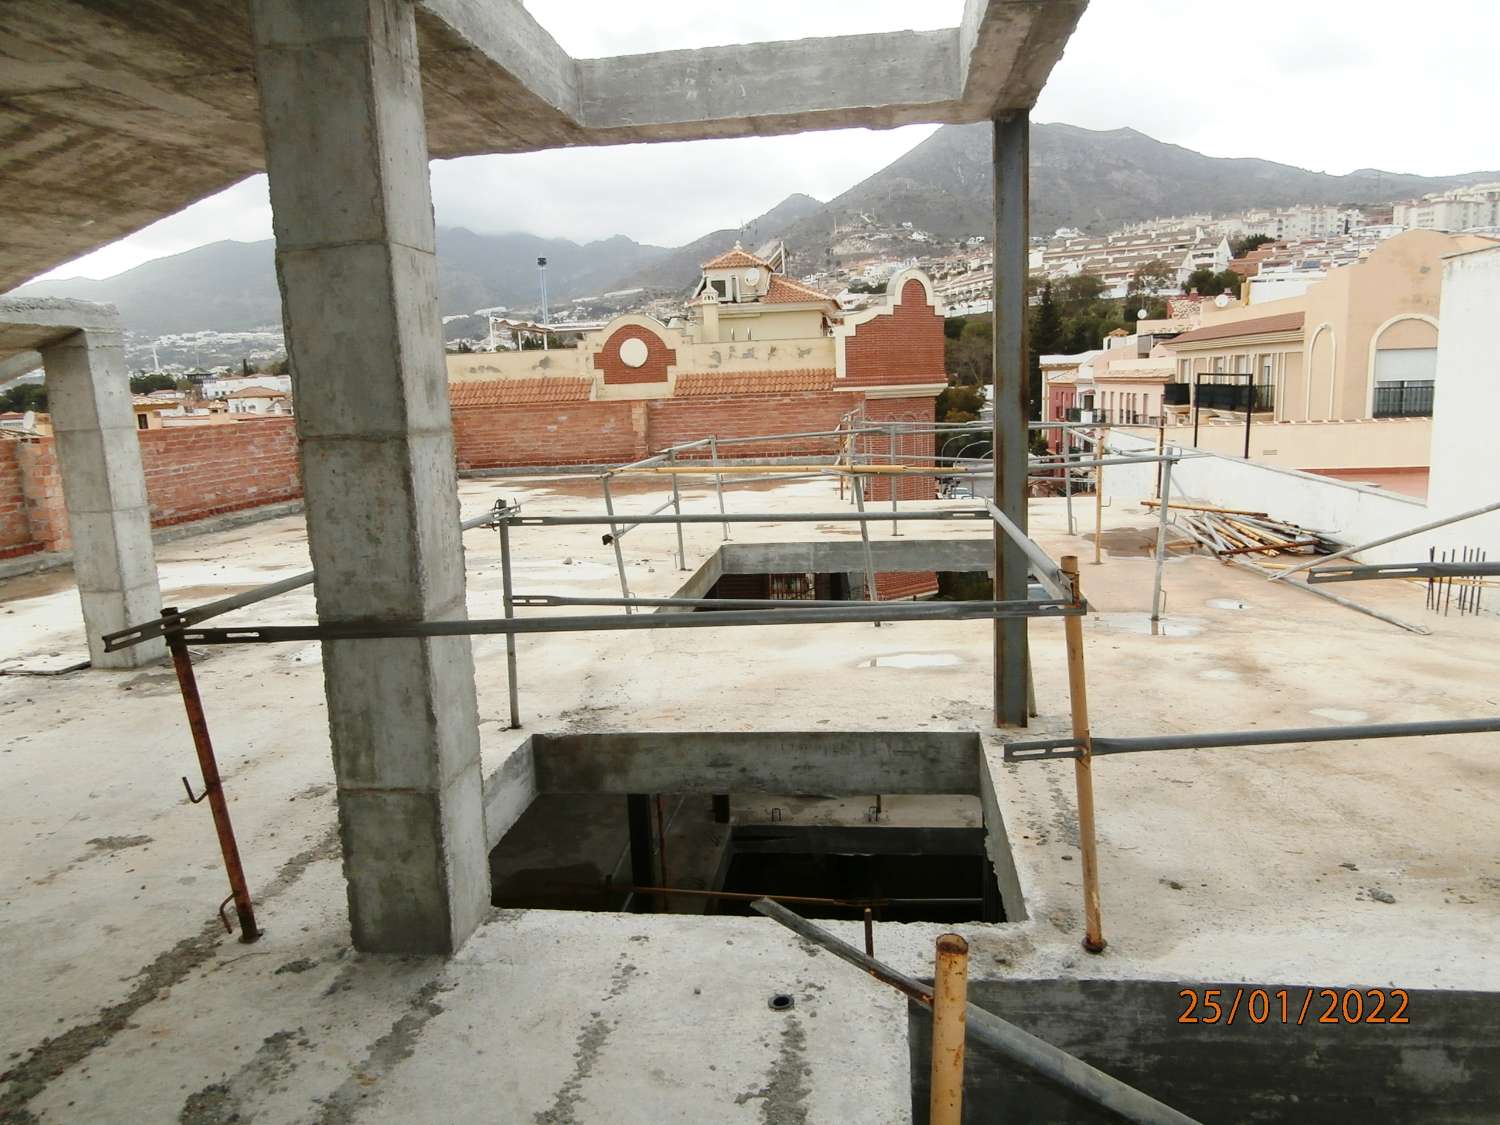 Hotel en venta, Arroyo de la Miel, Benalmádena, (precio terminado), hay otras opciones, actualmente proyecto en construcción.